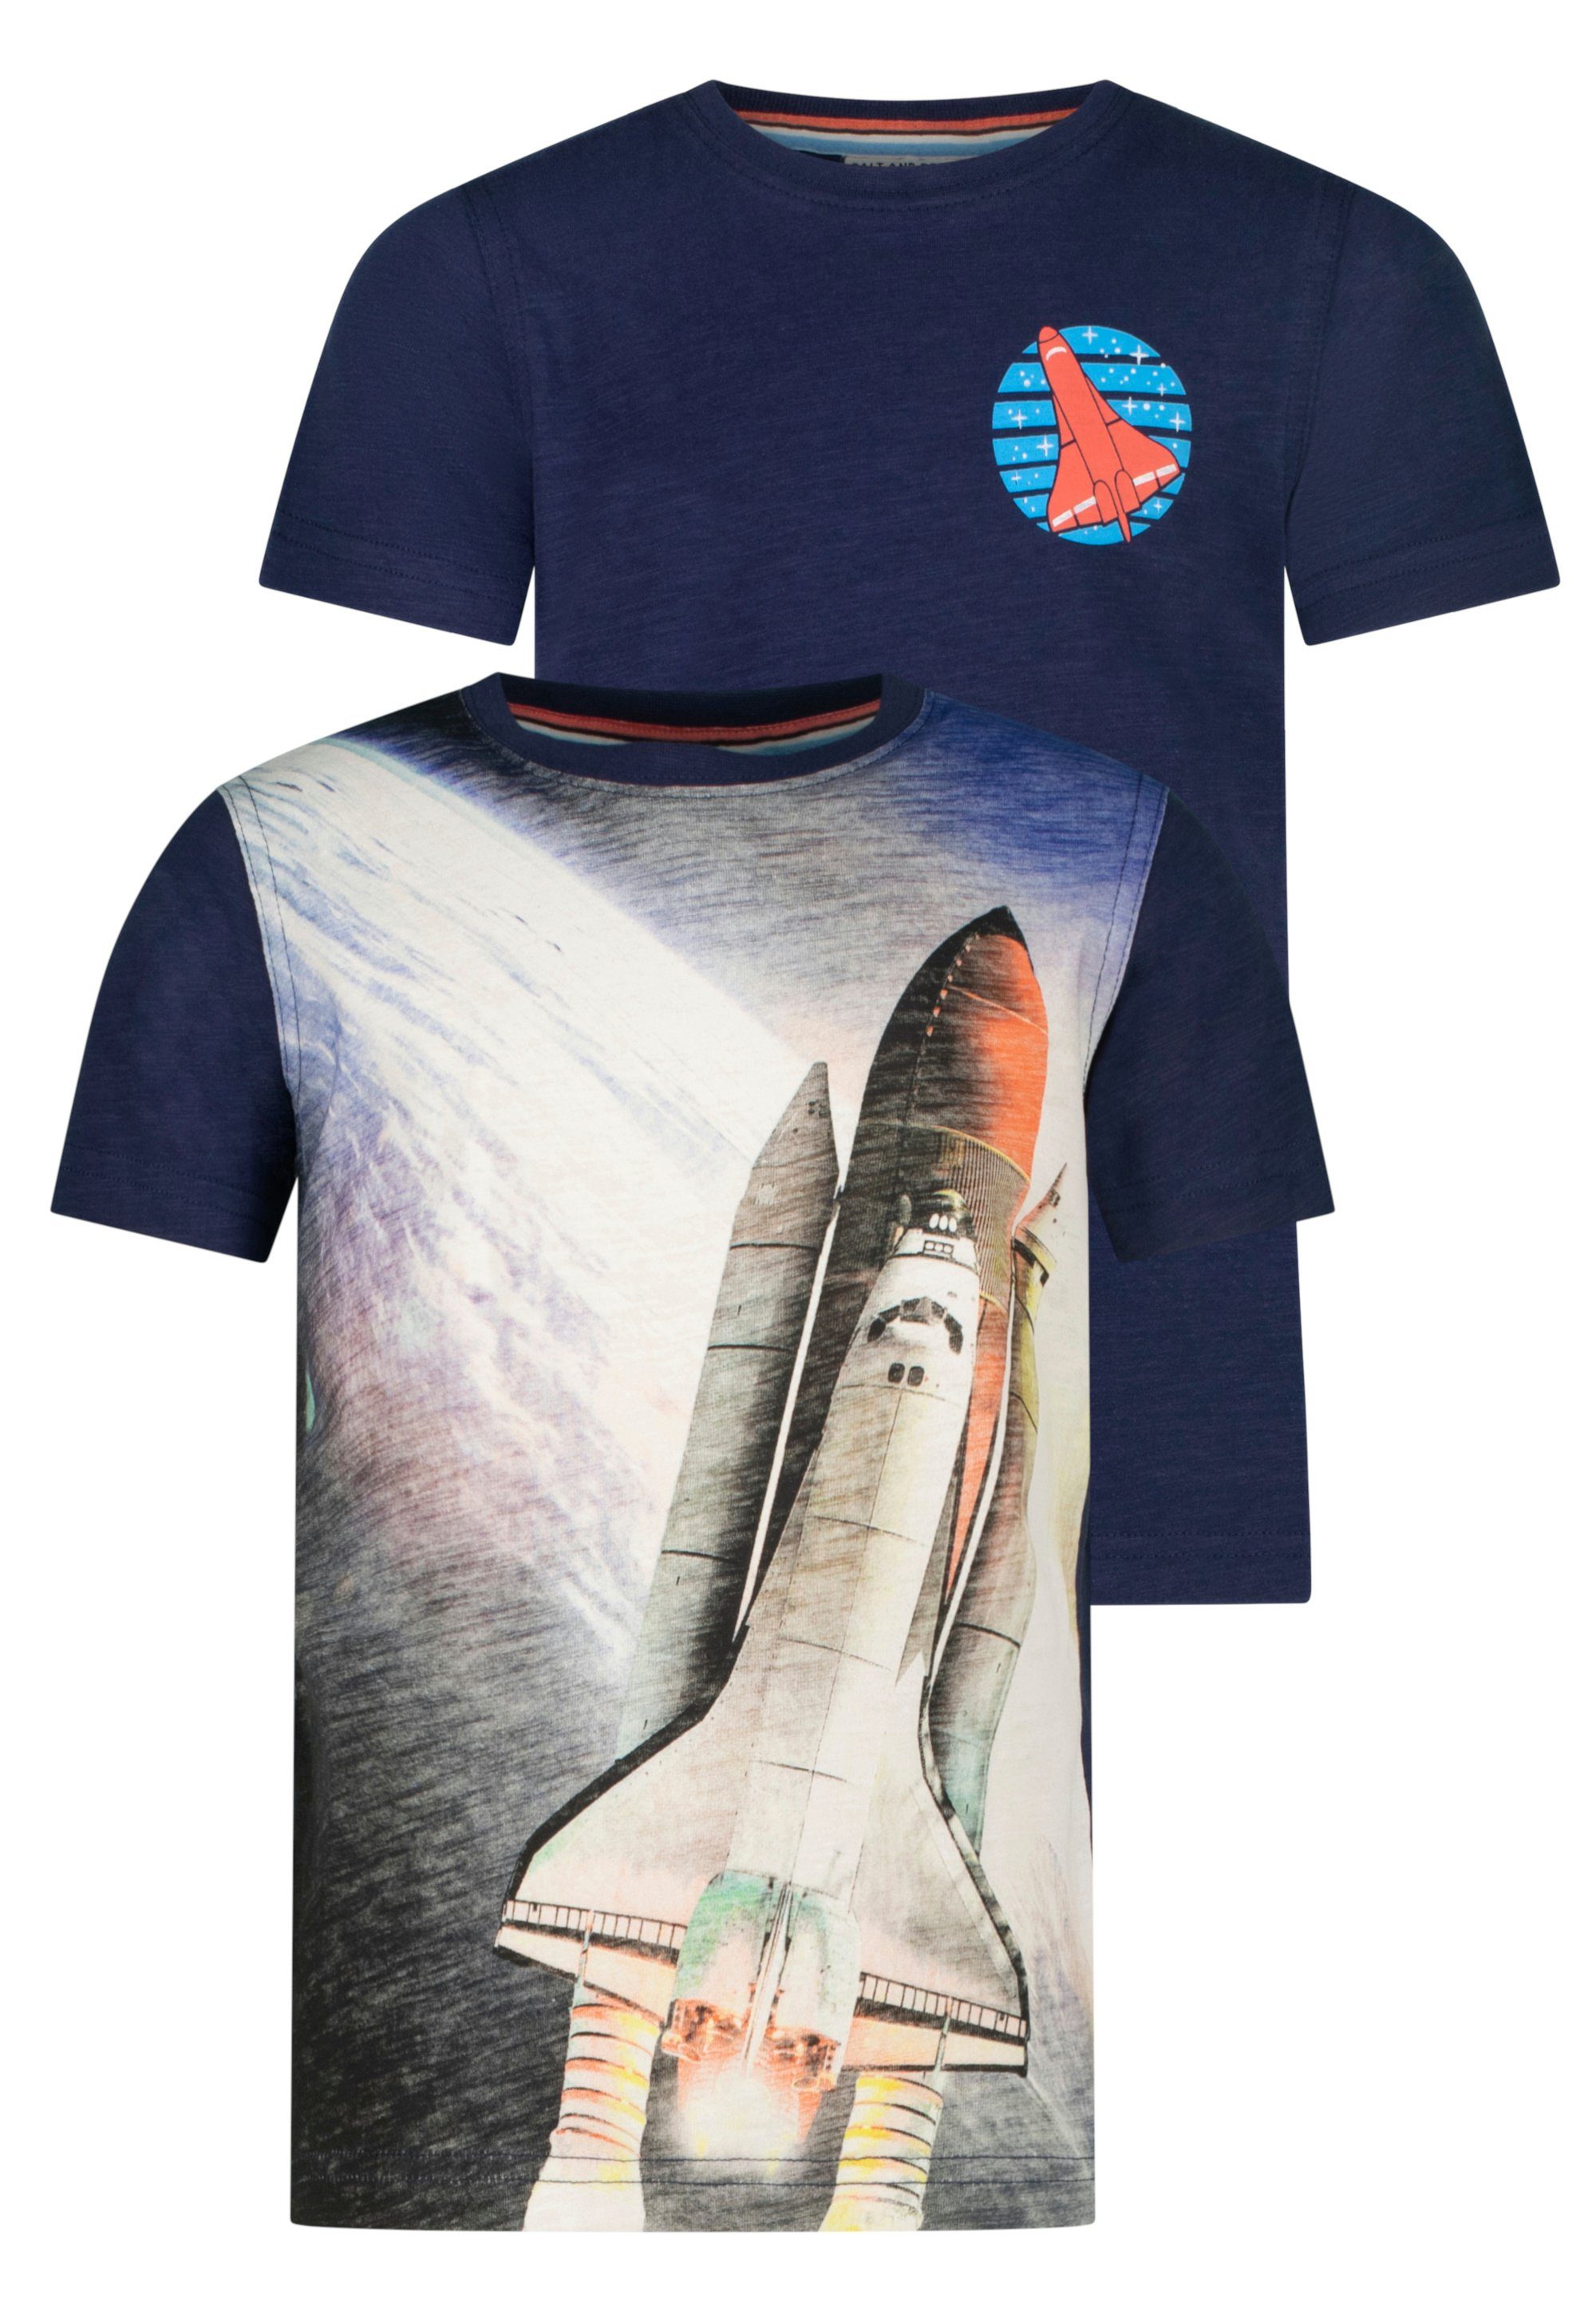 AND Shuttle mit T-Shirt dunkelblau (2-tlg) realistischem Space SALT PEPPER Fotodruck